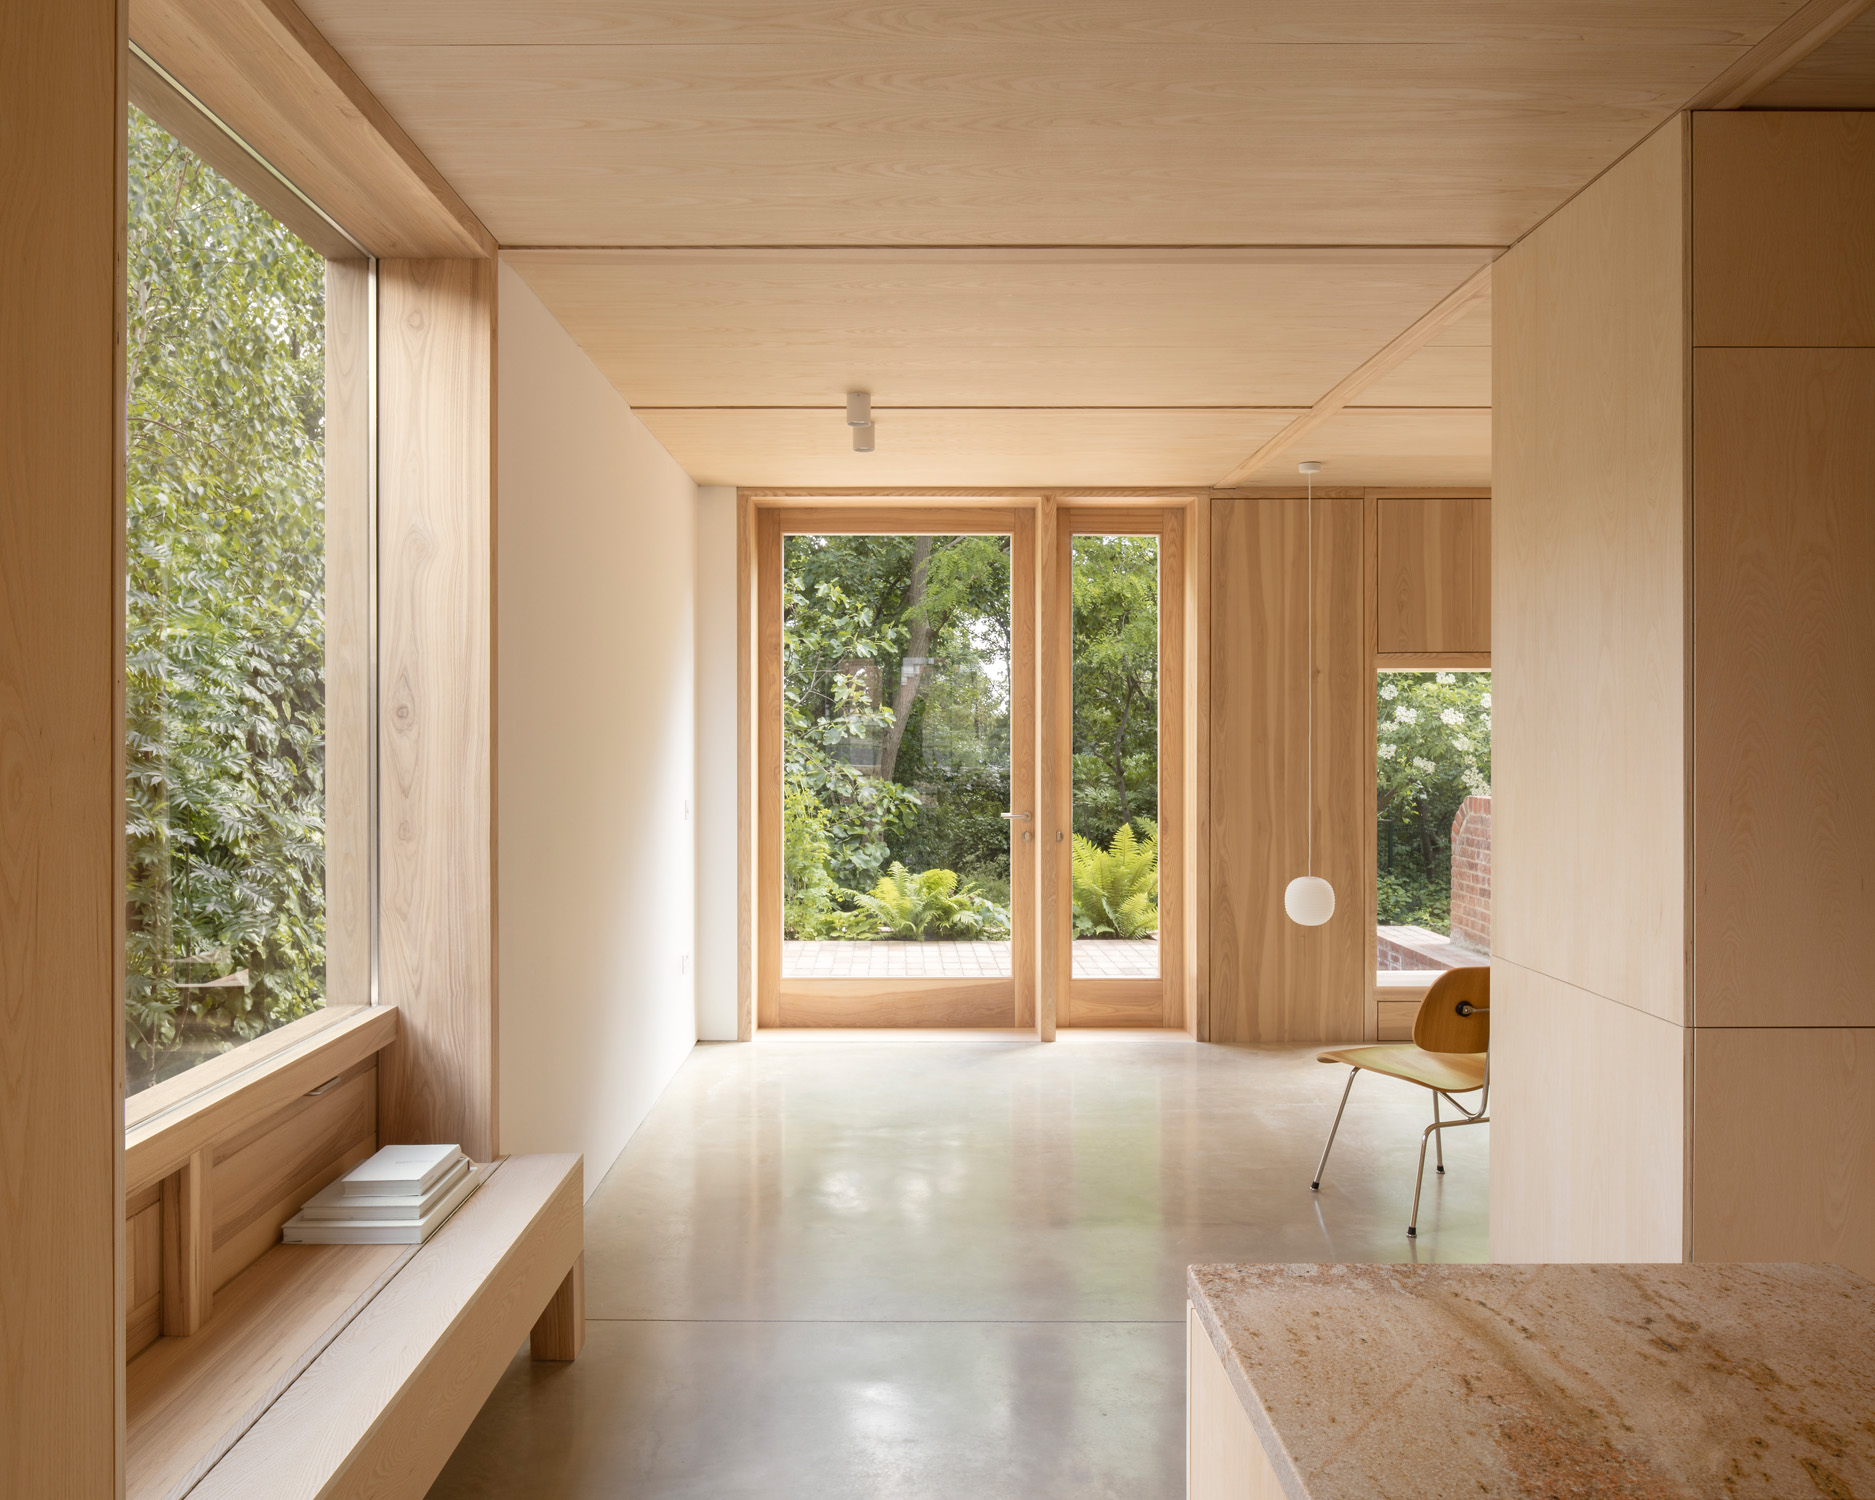 Living area by O'Sullivan Skoufoglou Architects - contemporary architecture and interior design studio in London